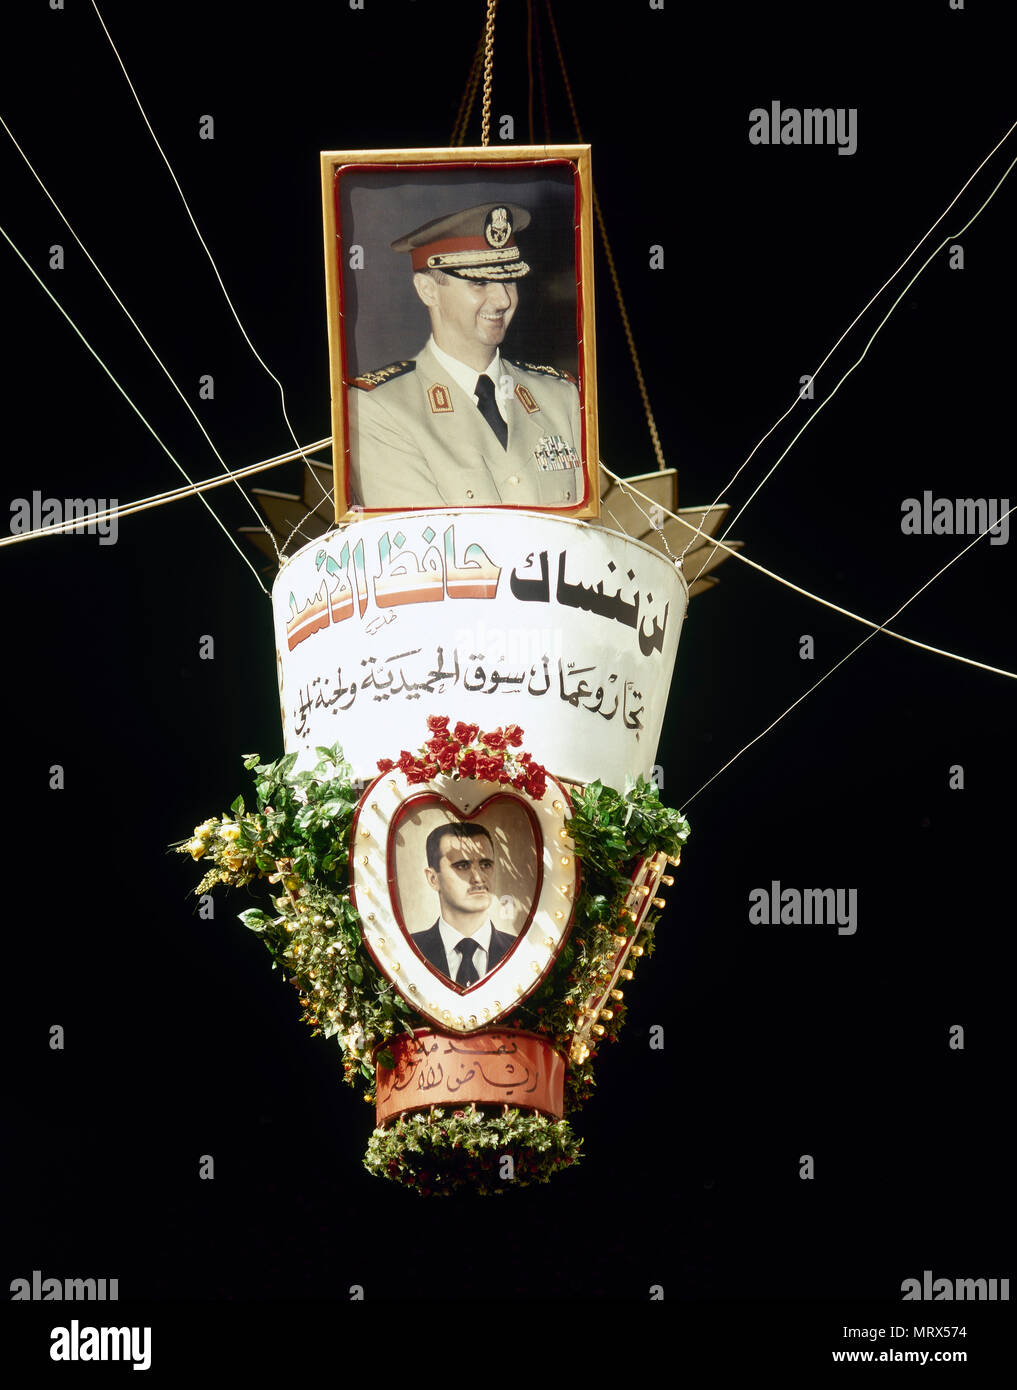 Bashar al-Assad (b. 1965). Presidente della Siria dal 2000 quando suo padre Hafez al-Assad (1930-2000) è morto. Foto propagandistica del regime siriano. La foto è stata scattata alcuni anni prima della guerra civile. Al-Hamidiyah Souq. Damasco. La Siria. Foto Stock